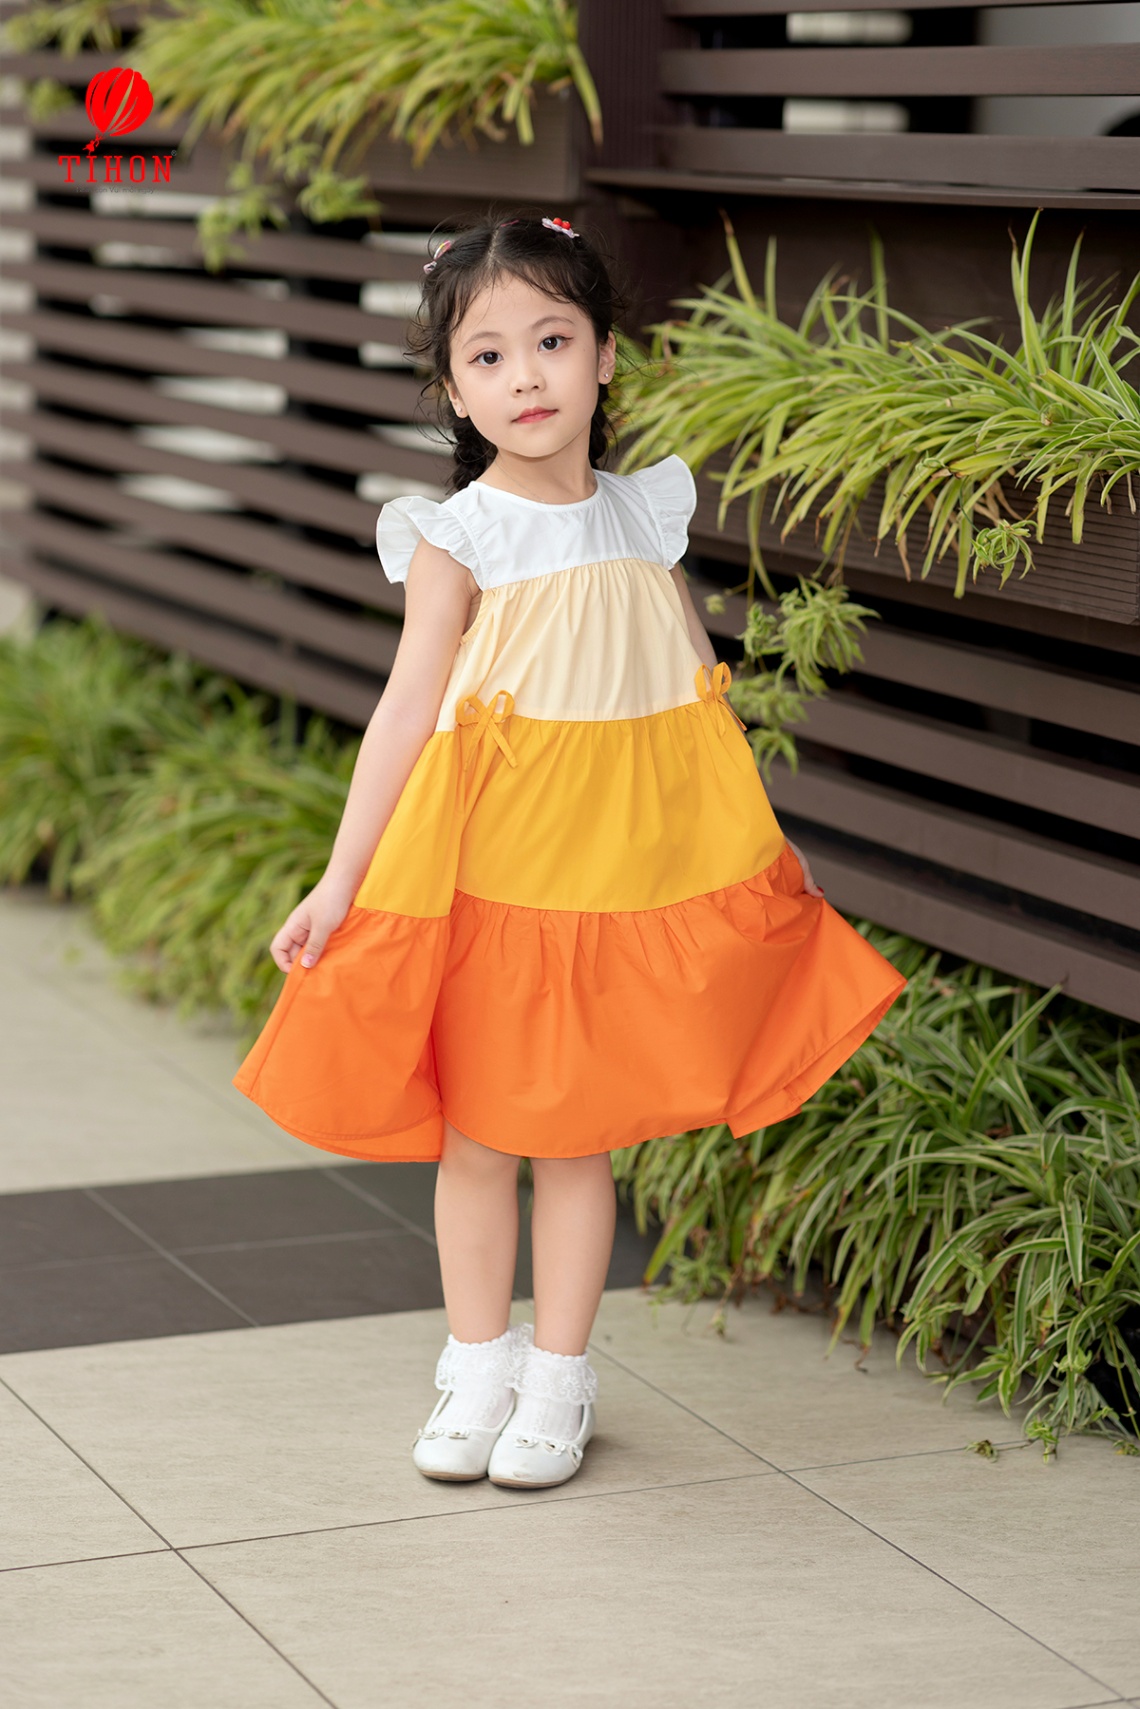 LiTibaby Đà Nẵng - Thời trang trẻ em Việt - Váy bò bé gái vừa lạ vừa đẹp,  siêu xinh diện hè cho các bé đây ạ😍😍😍 👉Size 1-5 #145k 👉Size 6-10 #